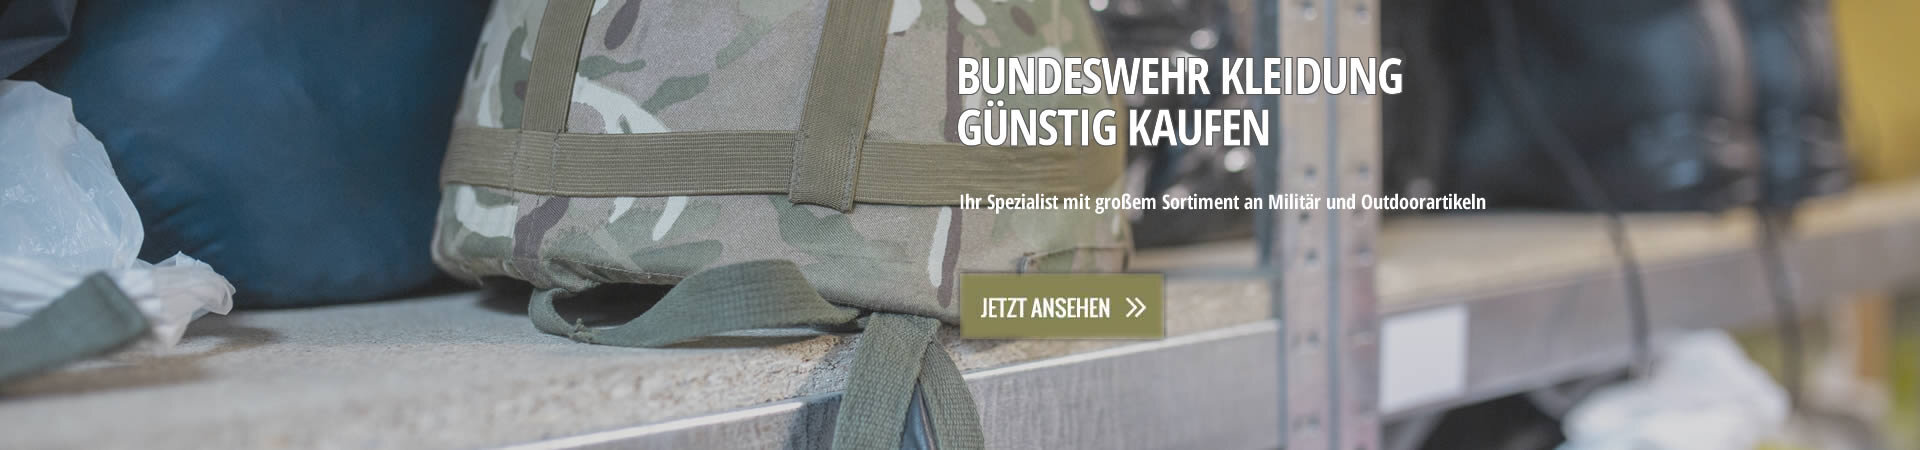 Bundeswehrkleidung günstig kaufen